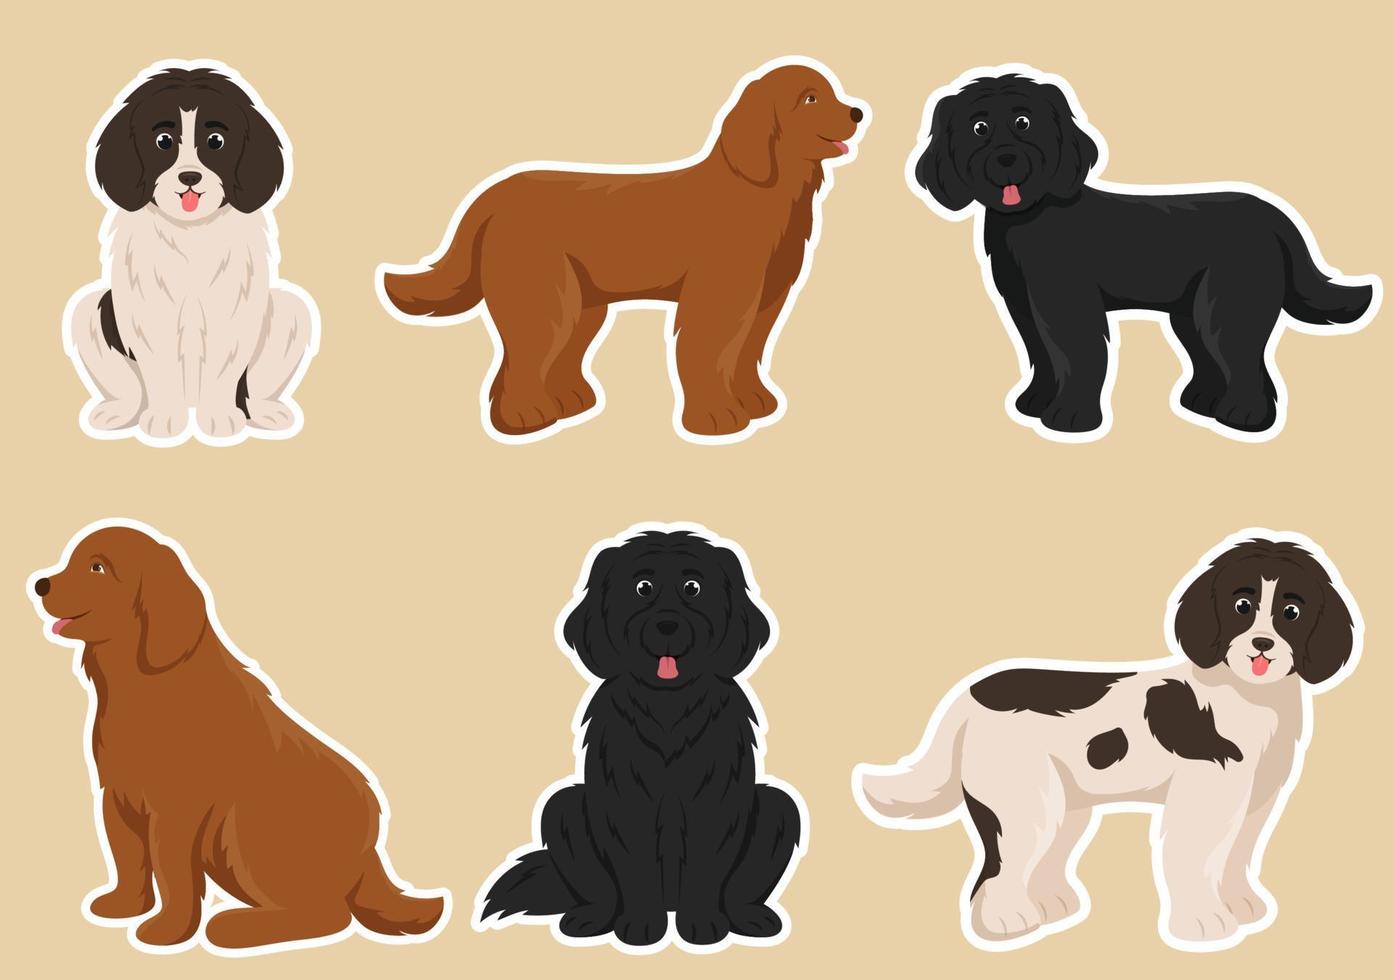 animais de cão de terra nova com cor preta, marrom ou landseer em estilo simples modelo de desenho animado bonito ilustração desenhada à mão vetor